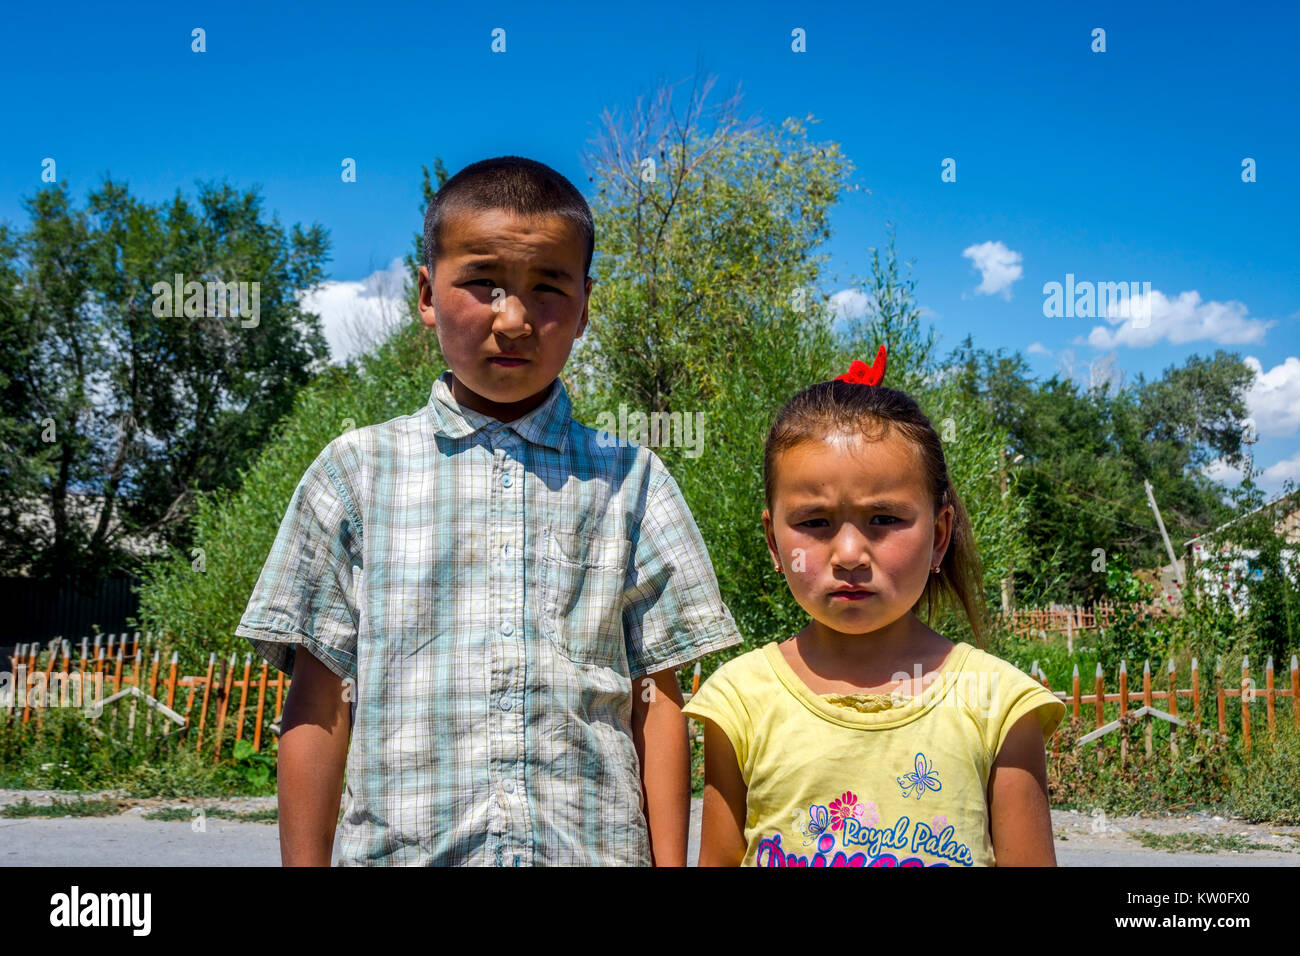 UGUT, Kirghizistan - 16 agosto: Fratelli, un fratello e una sorella in posa con gravi l'espressione del viso. Ugut è un remoto villaggio in Kirghizistan. Agosto 201 Foto Stock